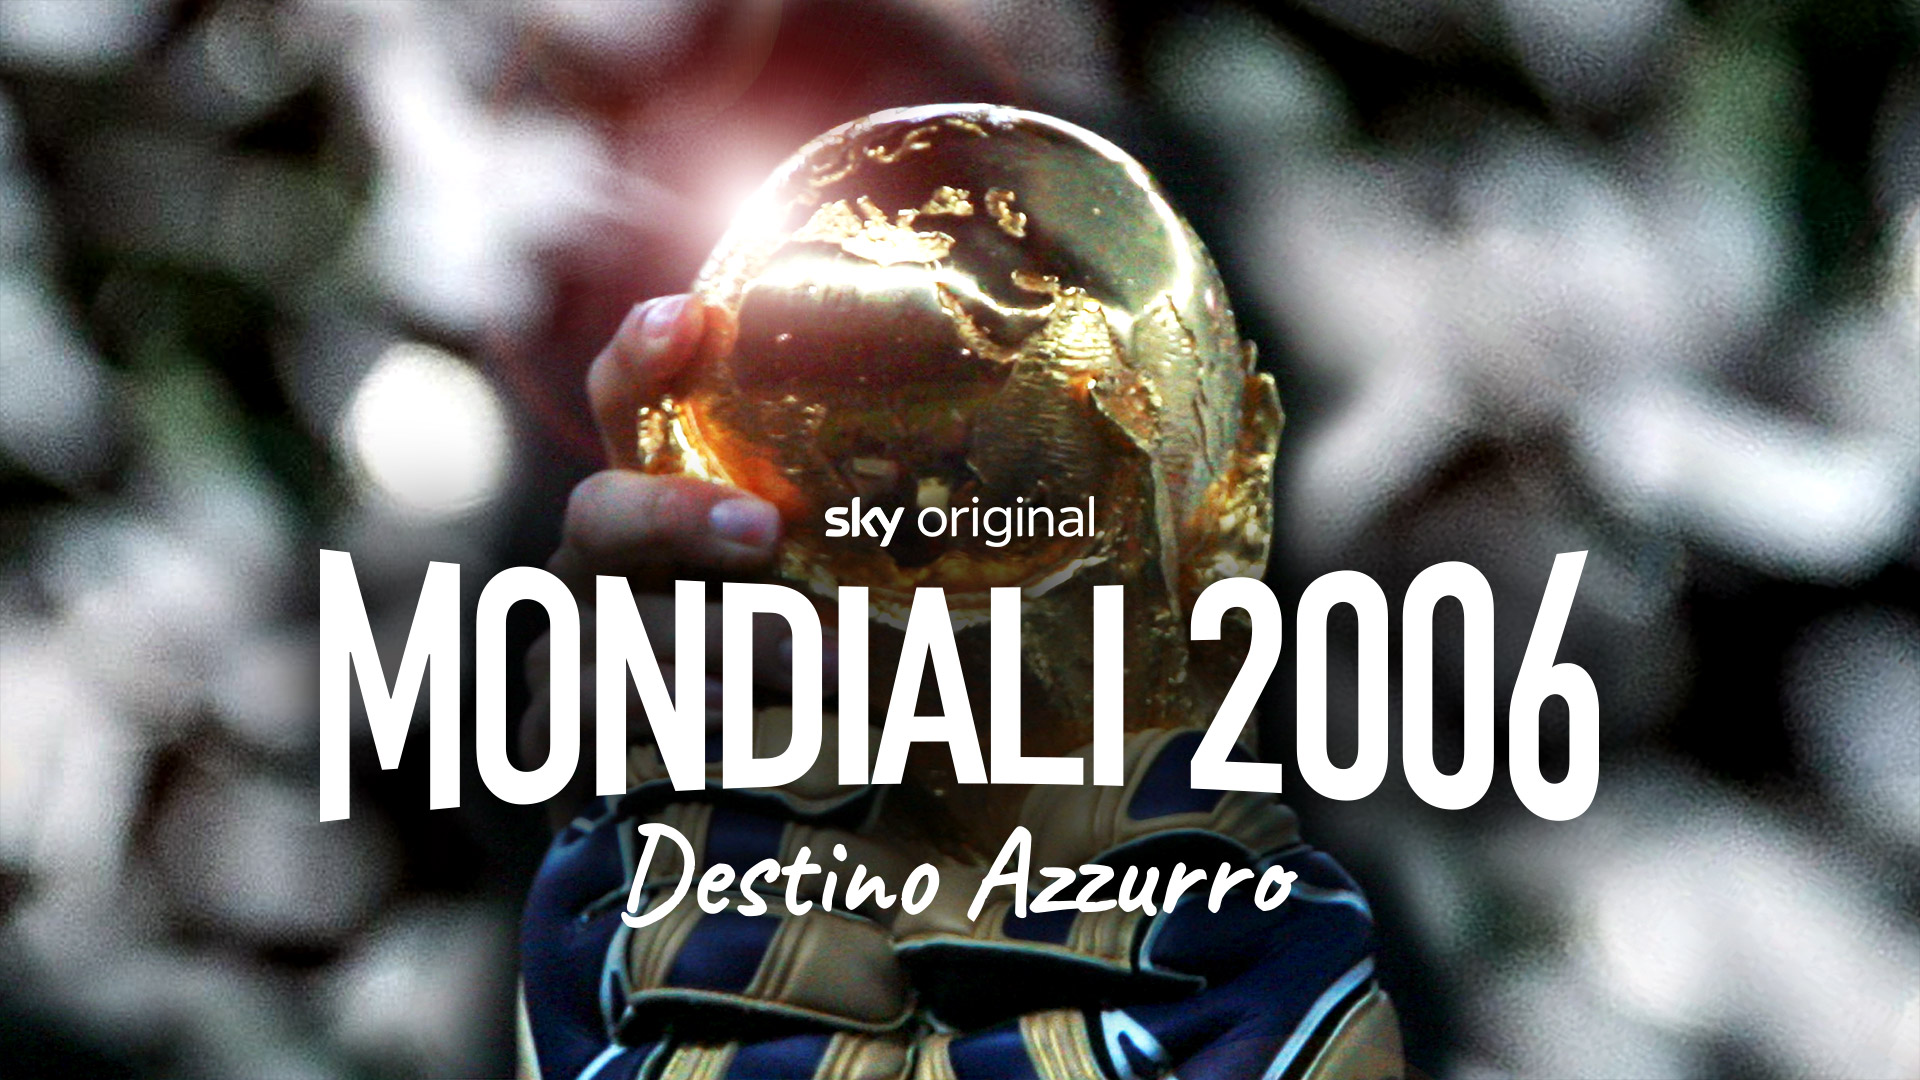 Mondiali 2006 - Destino Azzurro - Poster